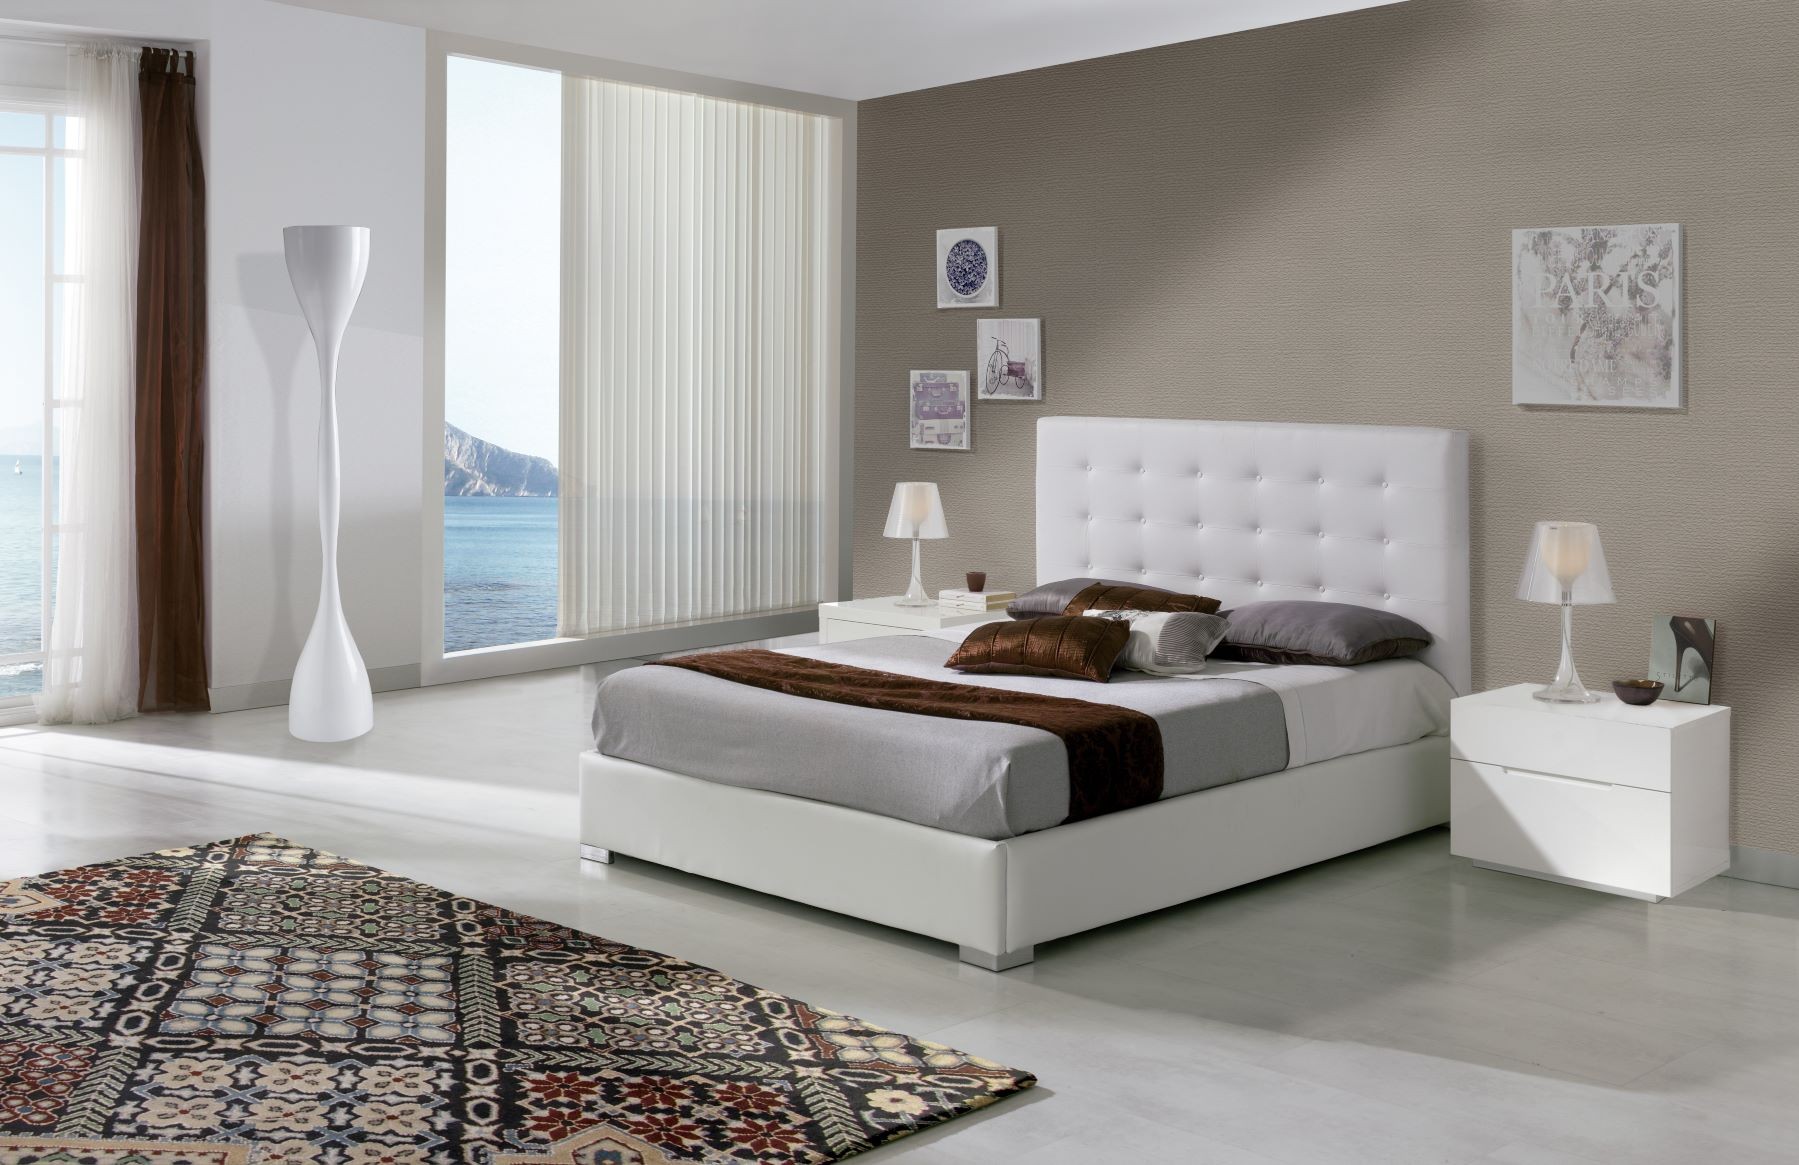 Estila Kožená dizajnová posteľ Eva s vysokým čelom s chesterfield prešívaním bielej farby 90-180cm